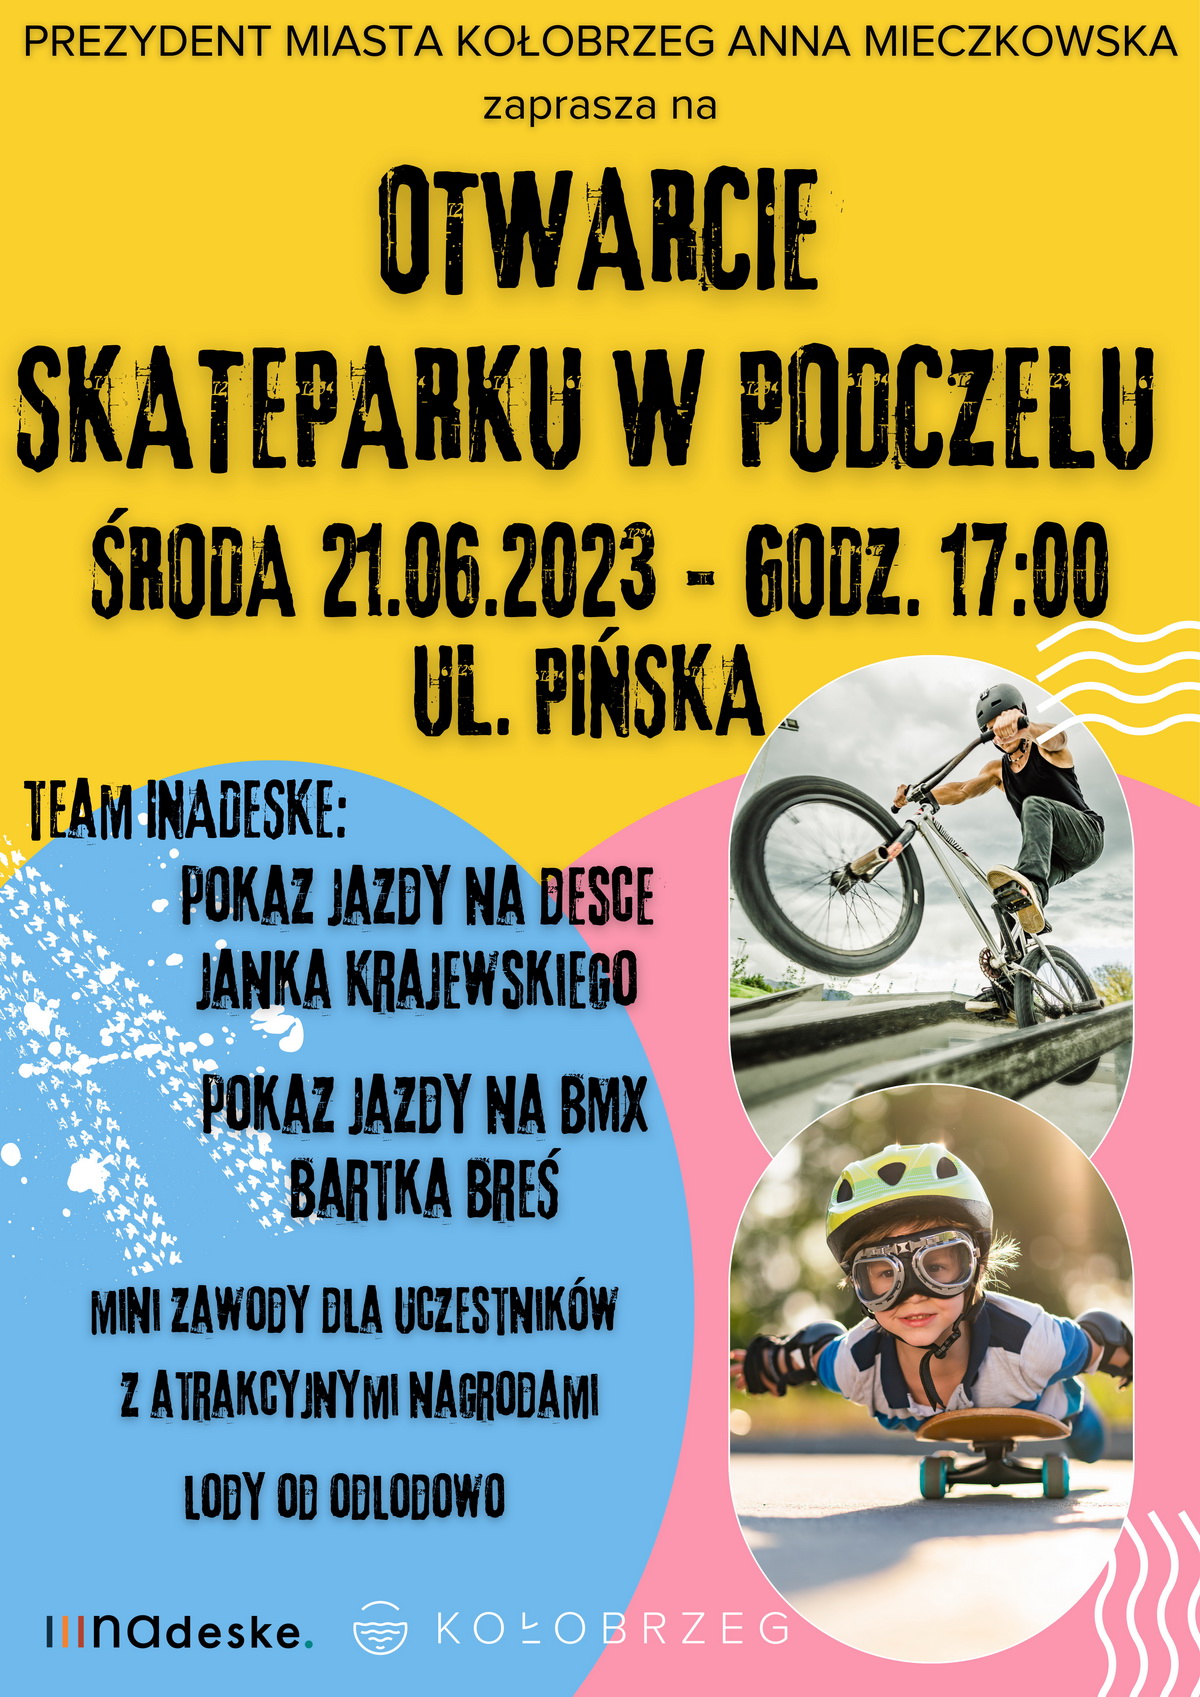 Otwarcie nowego skateparku w Podczelu